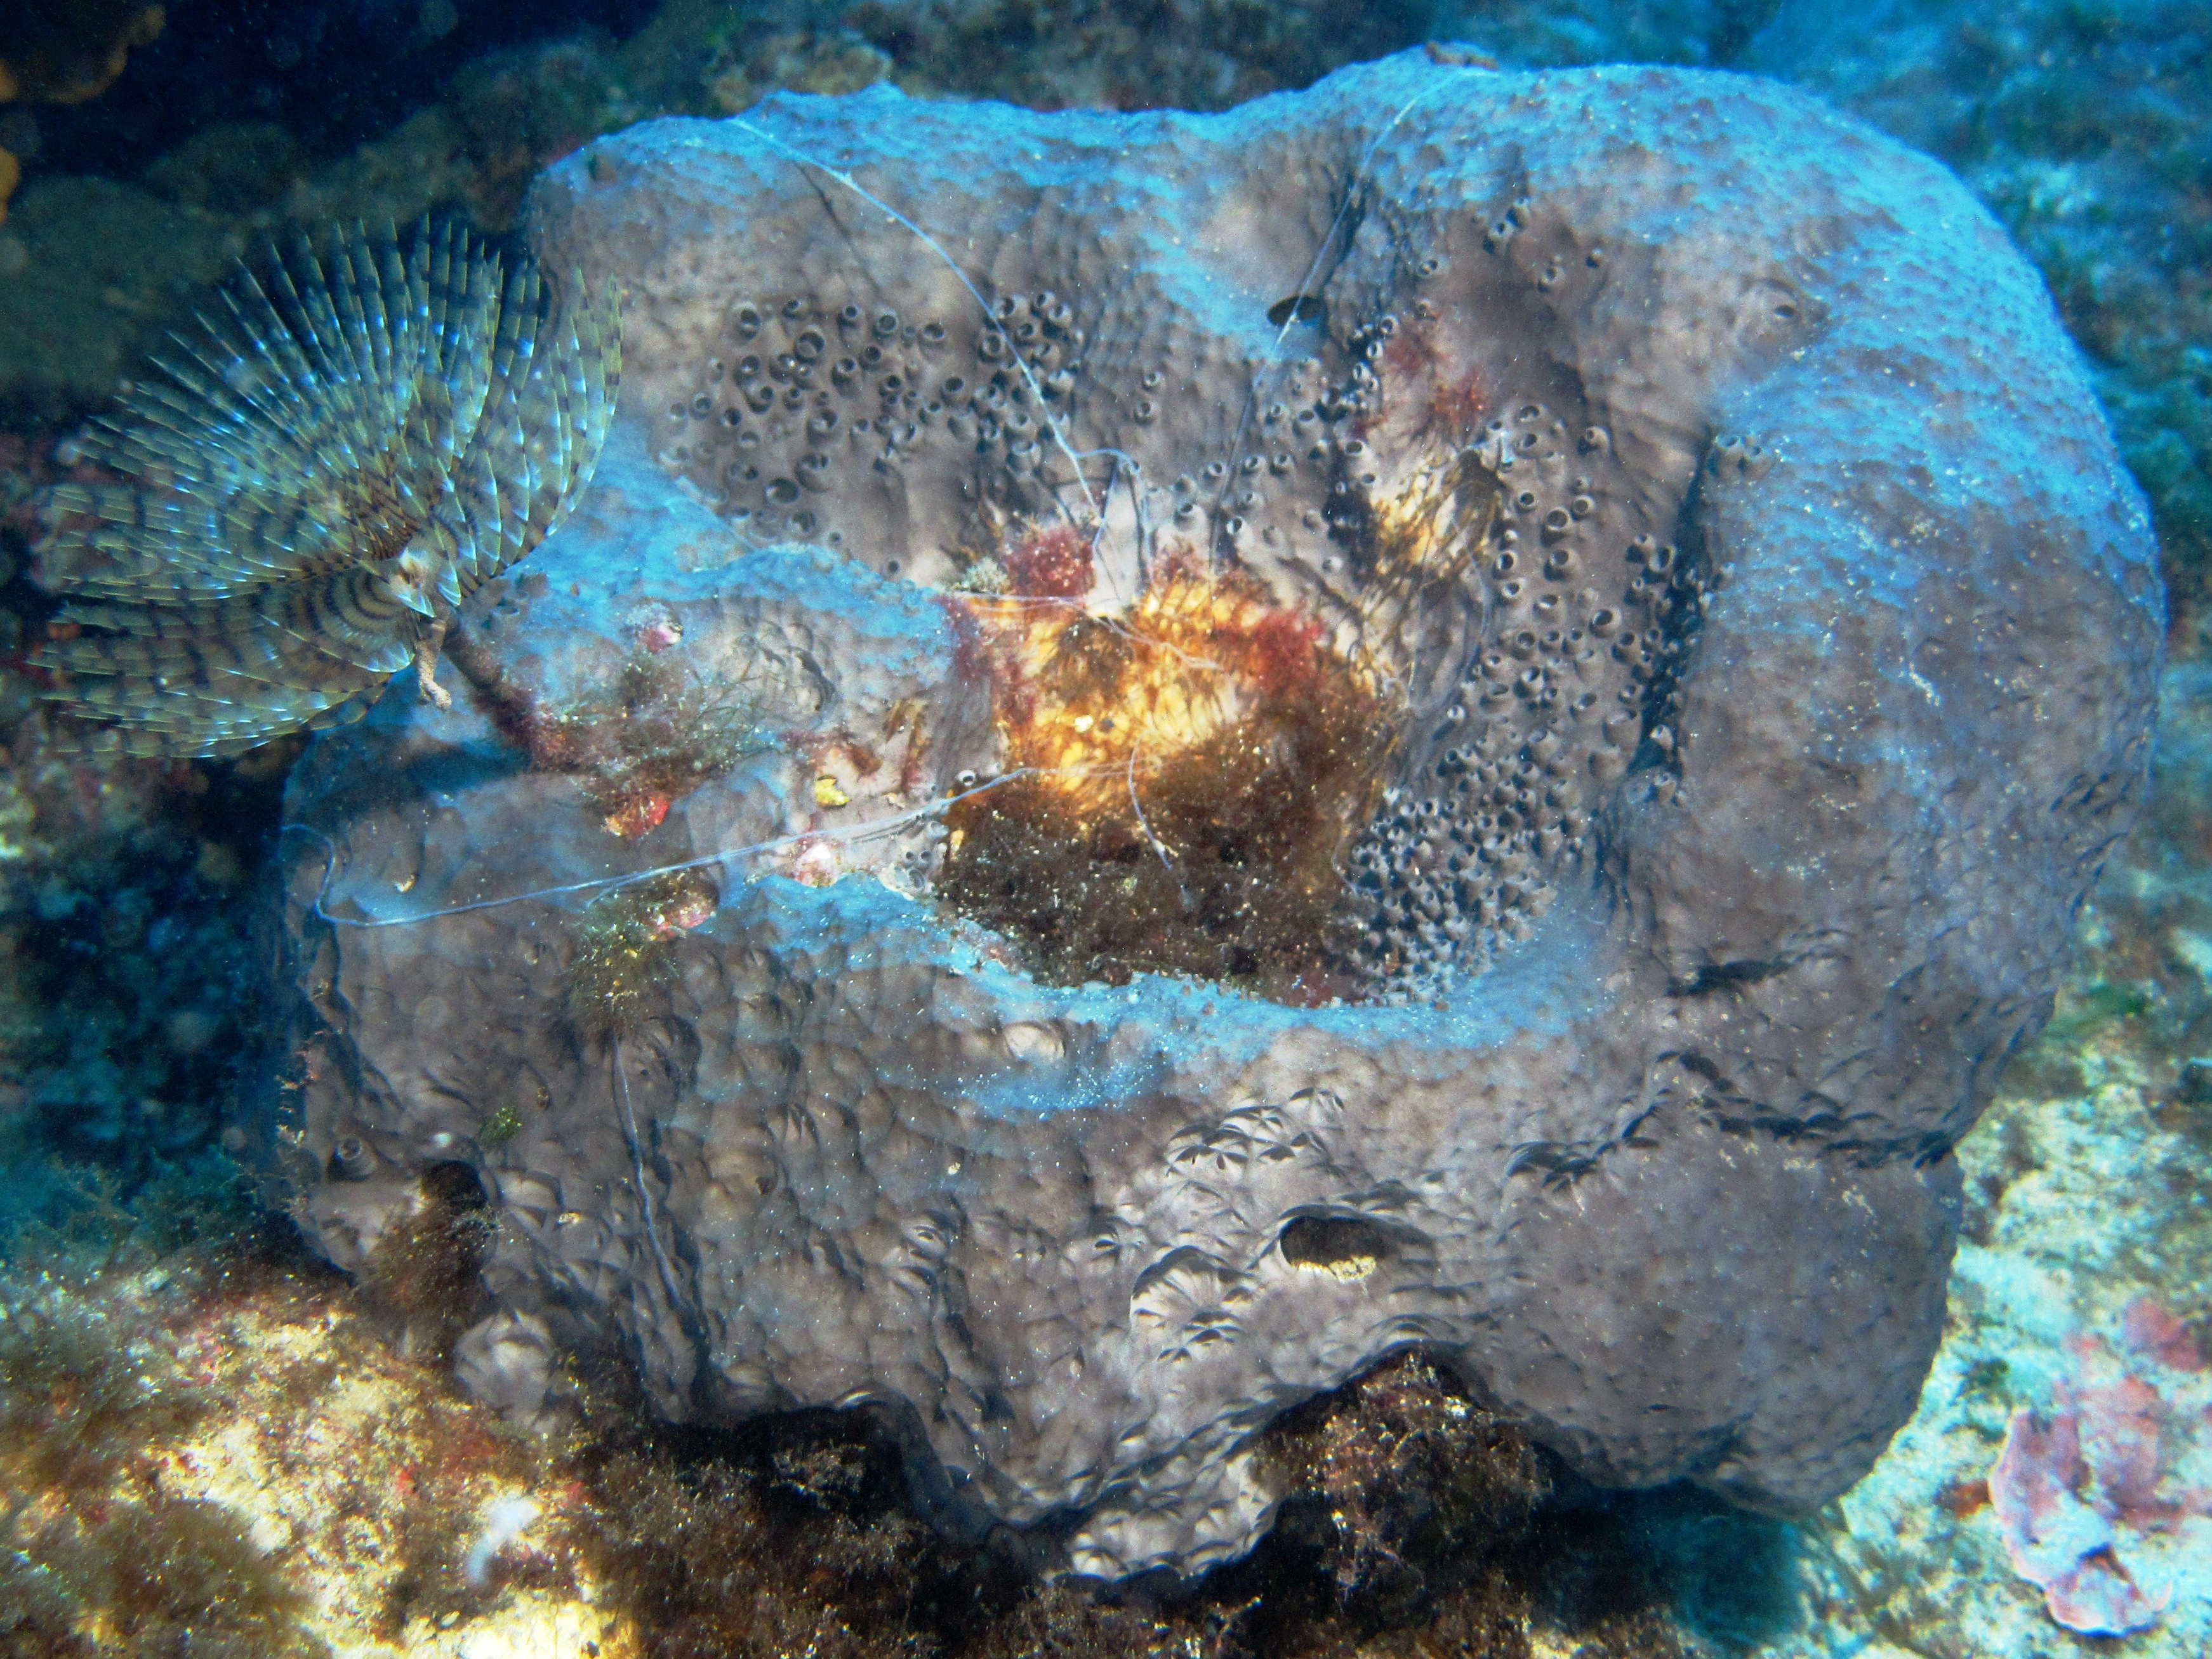 Facts About Sponges (Porifera)